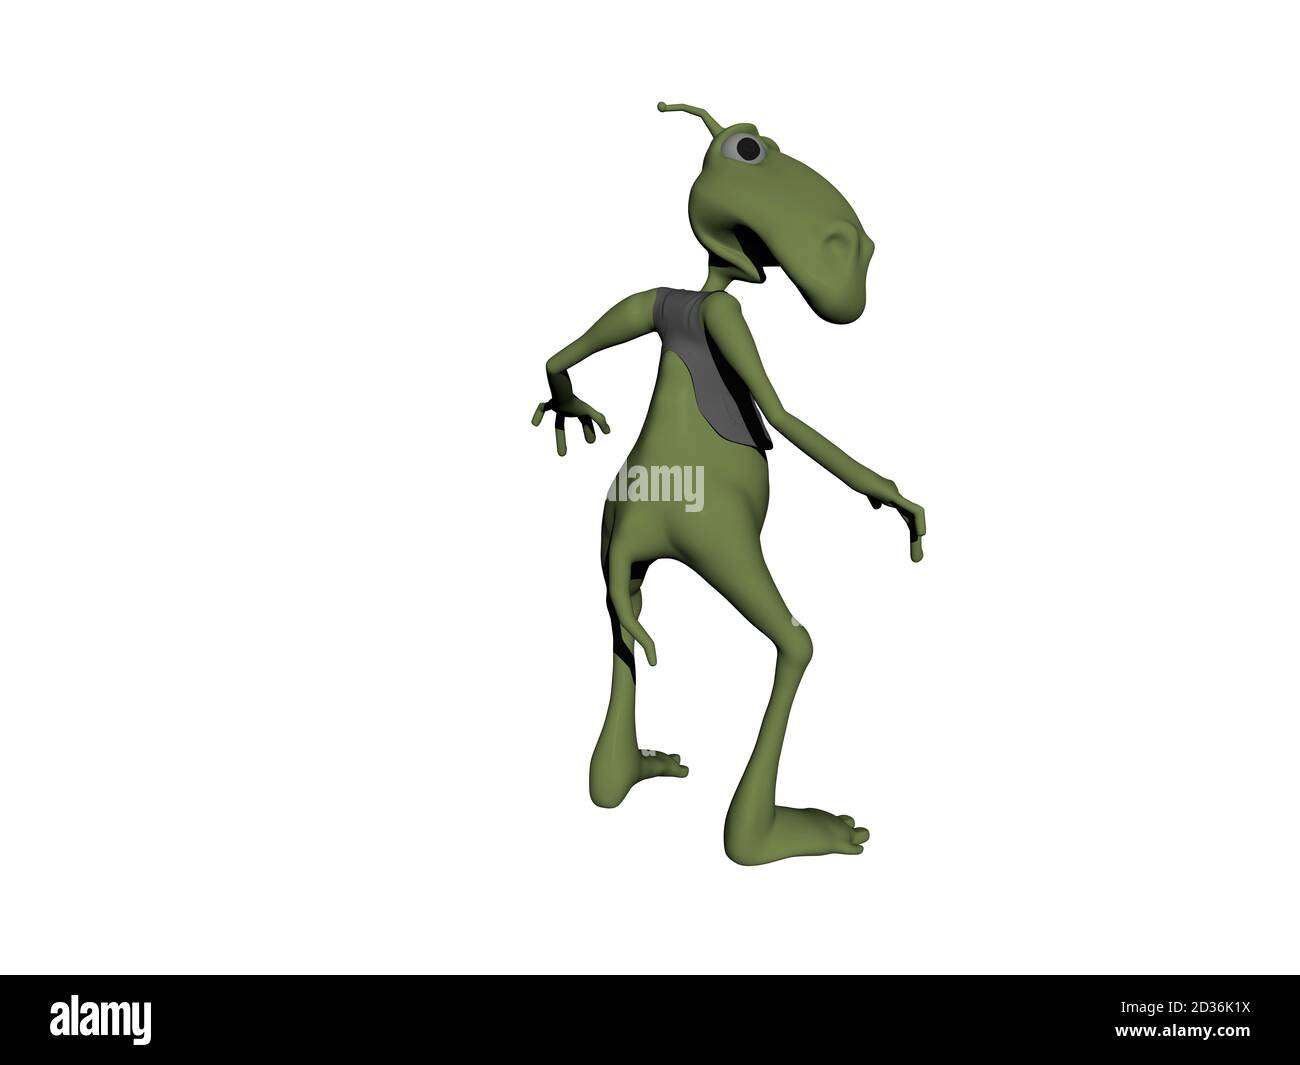 pequeño alienígena verde con extremidades delgadas Foto de stock